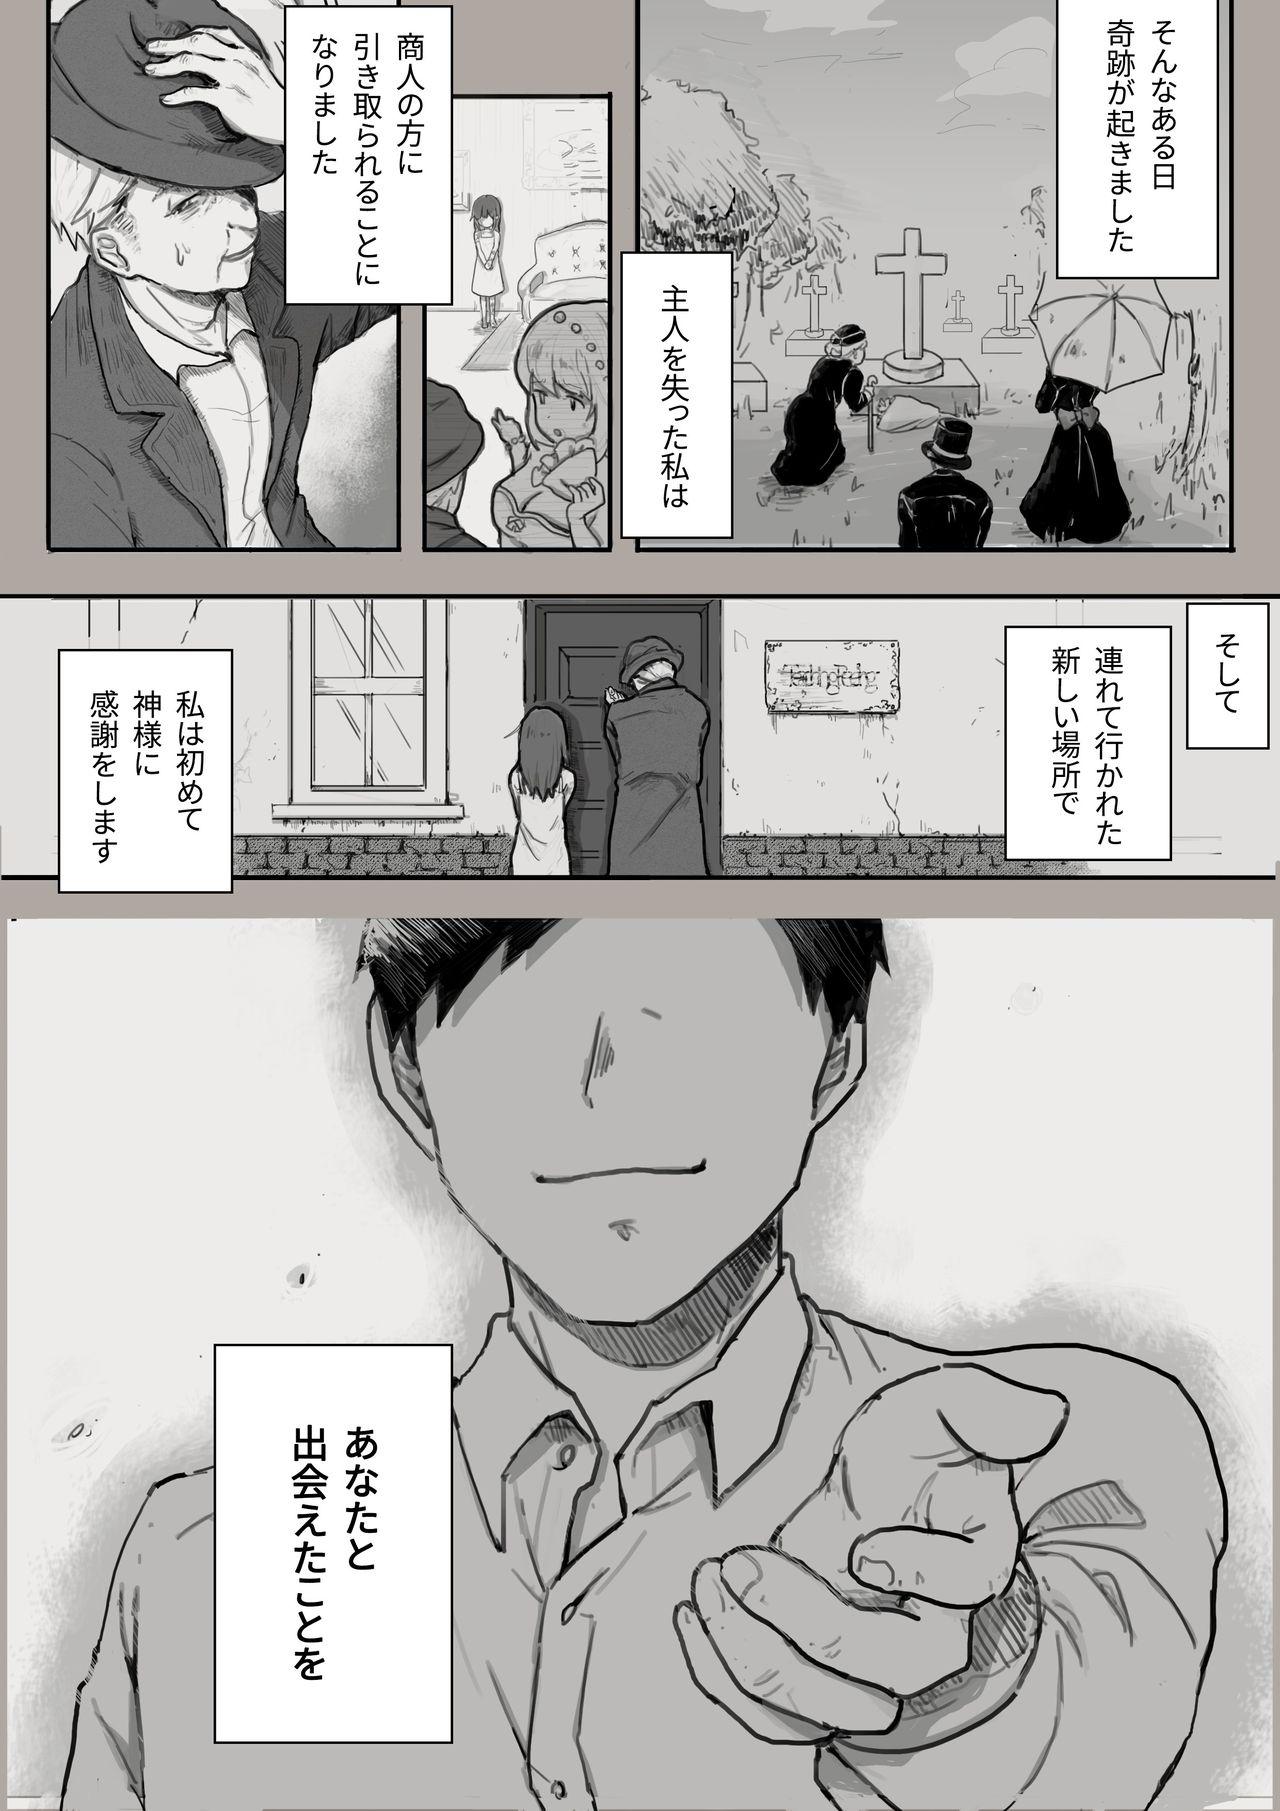 Facials Dorei to no Seikatsu Shuku Nishuunen "Anata to Deaete" - Dorei to no seikatsu Women Sucking Dicks - Page 3